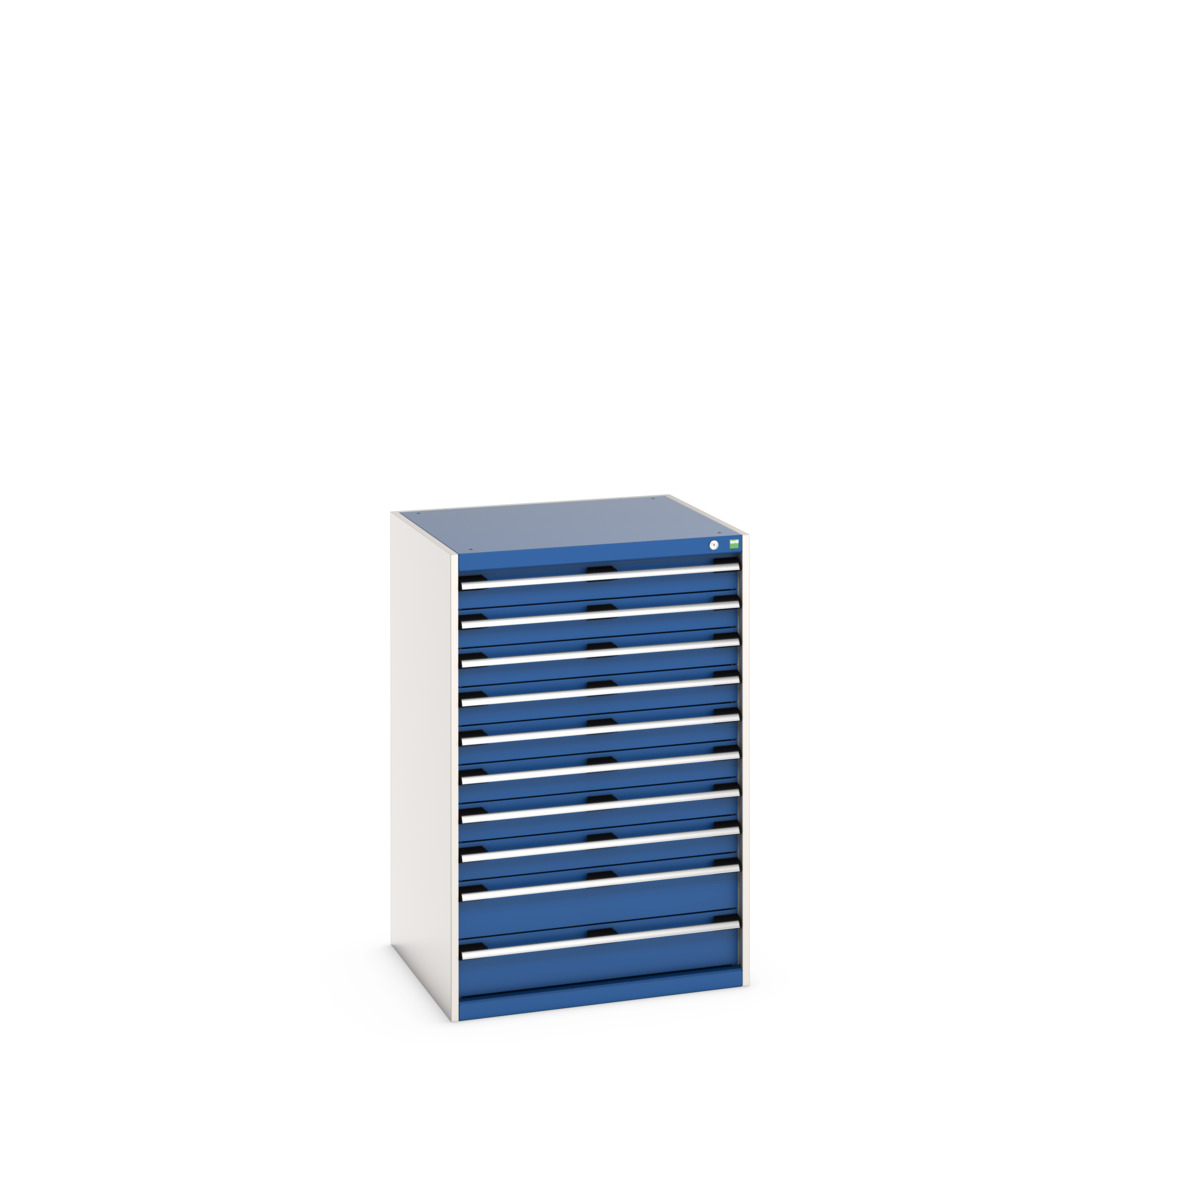 40028038.11V - cubio drawer cabinet